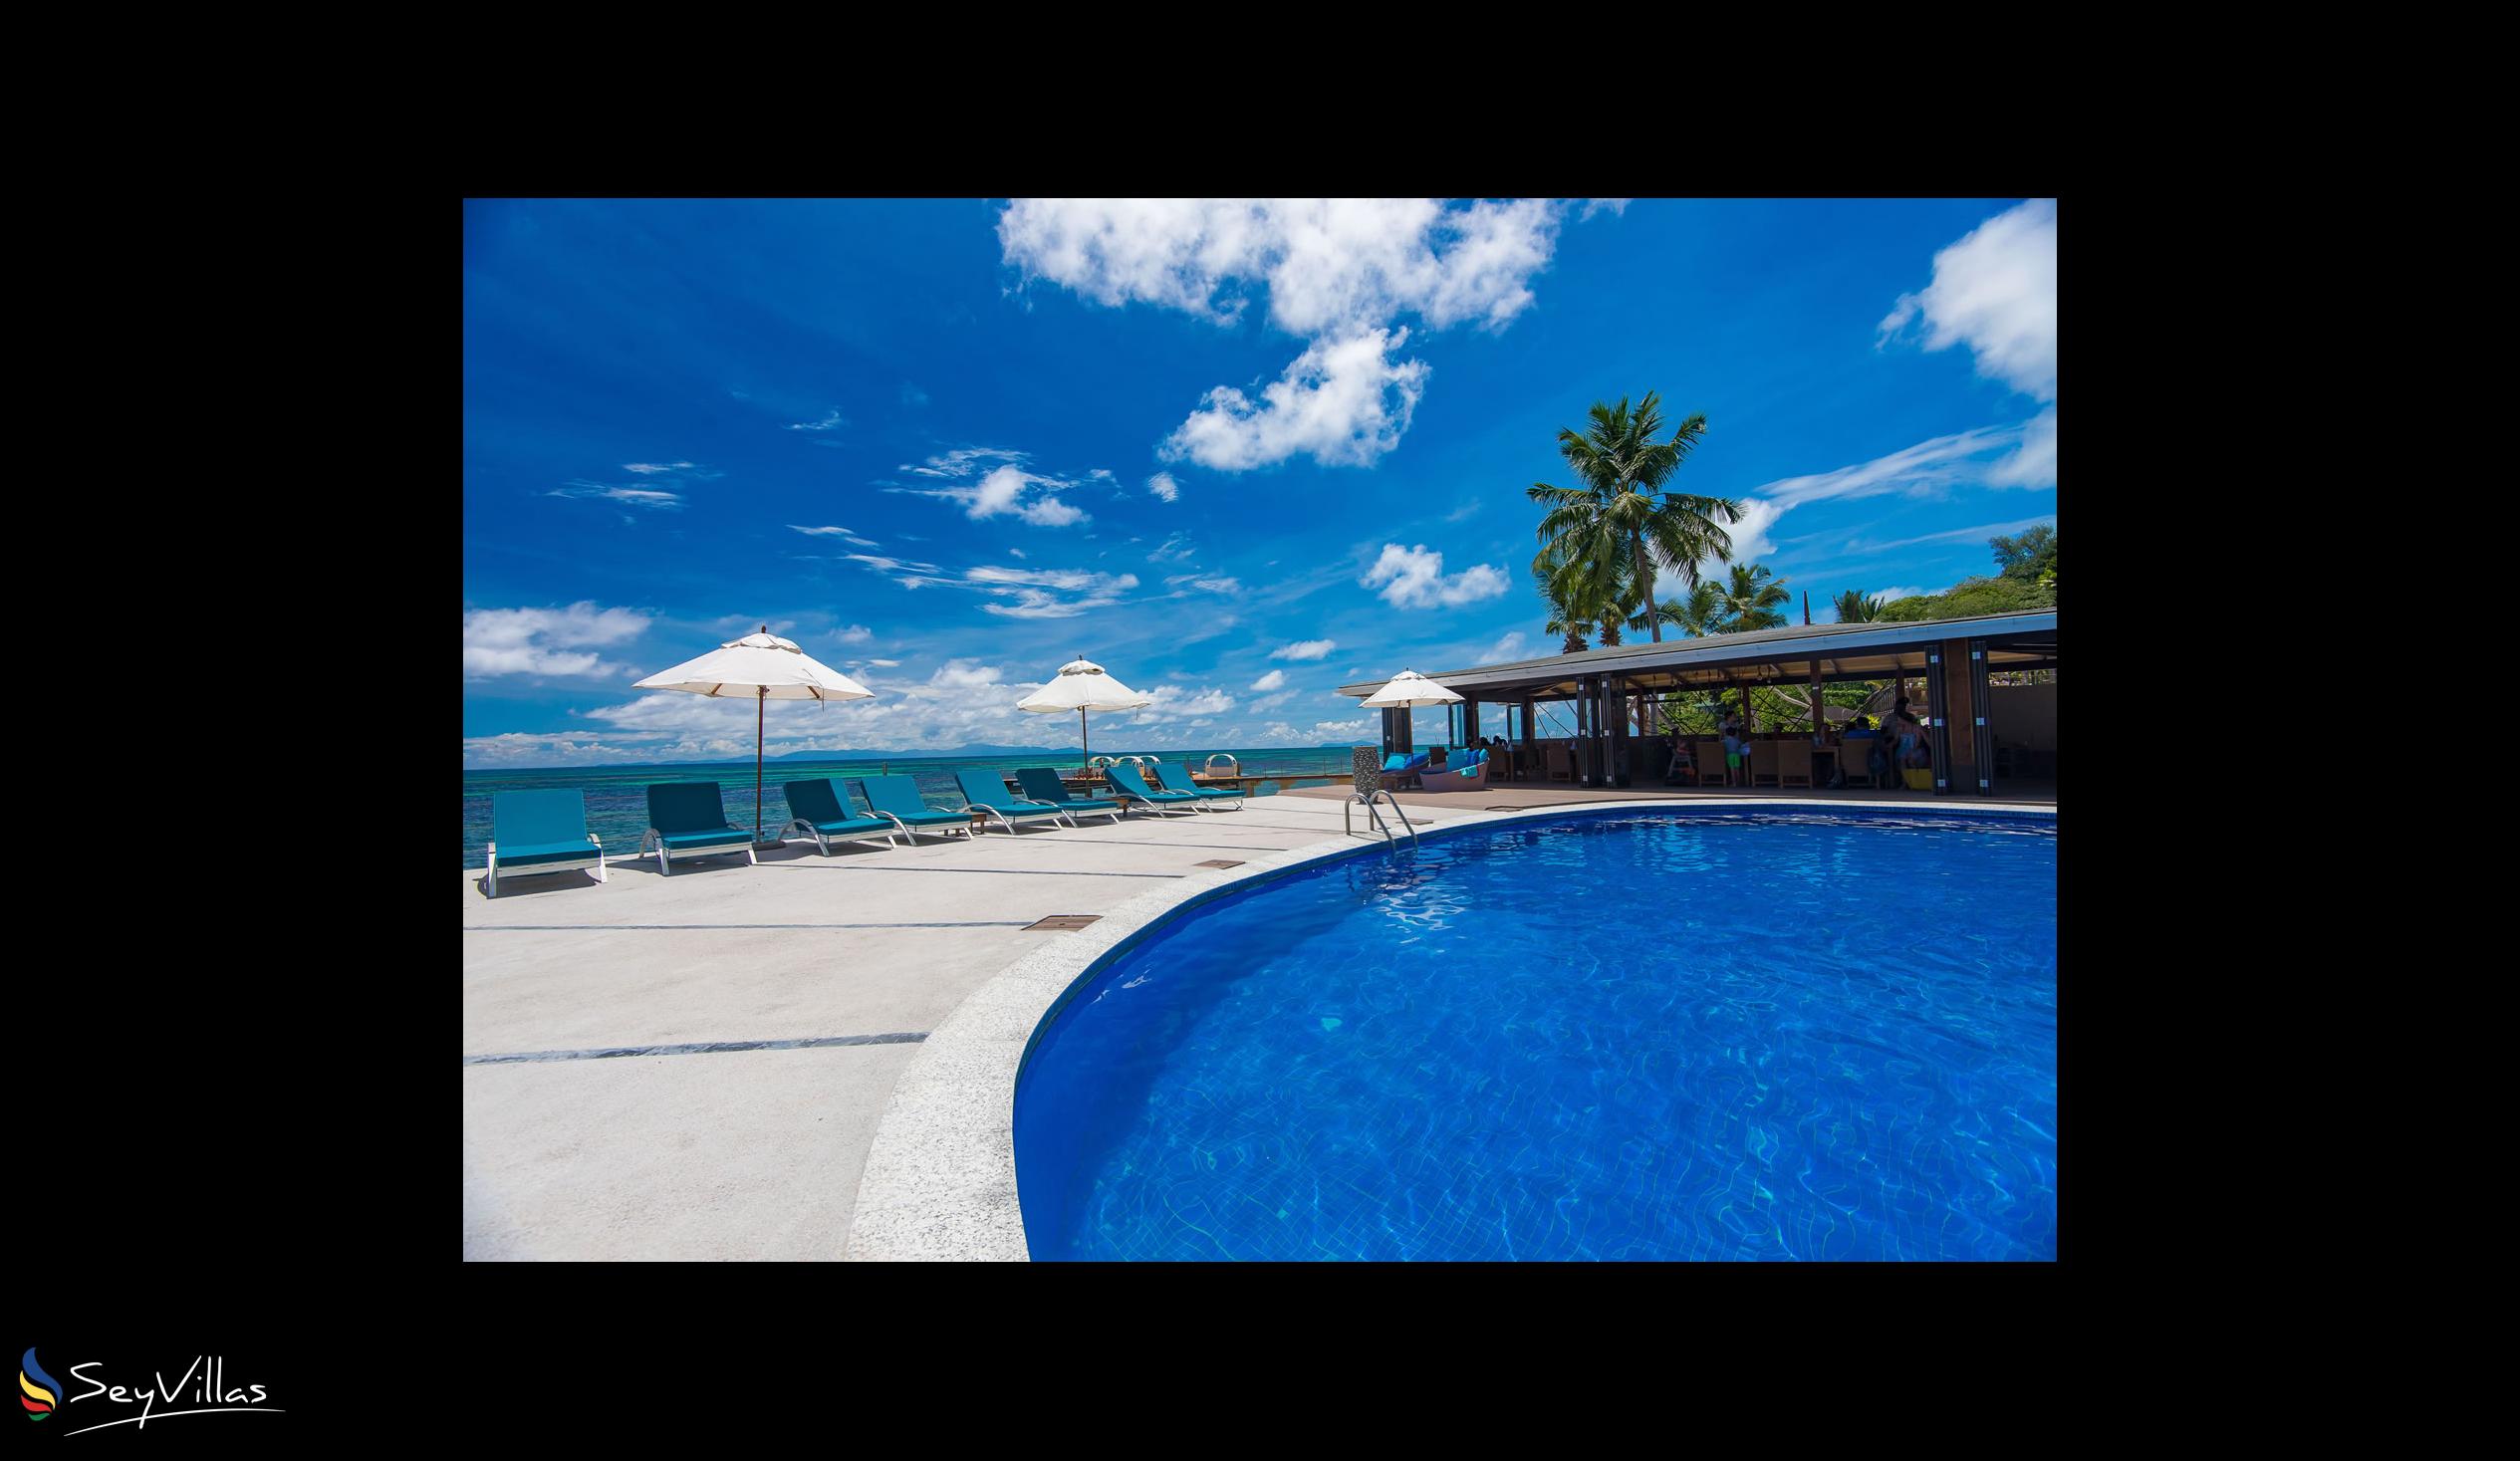 Foto 18: Coco de Mer & Black Parrot Suites - Aussenbereich - Praslin (Seychellen)